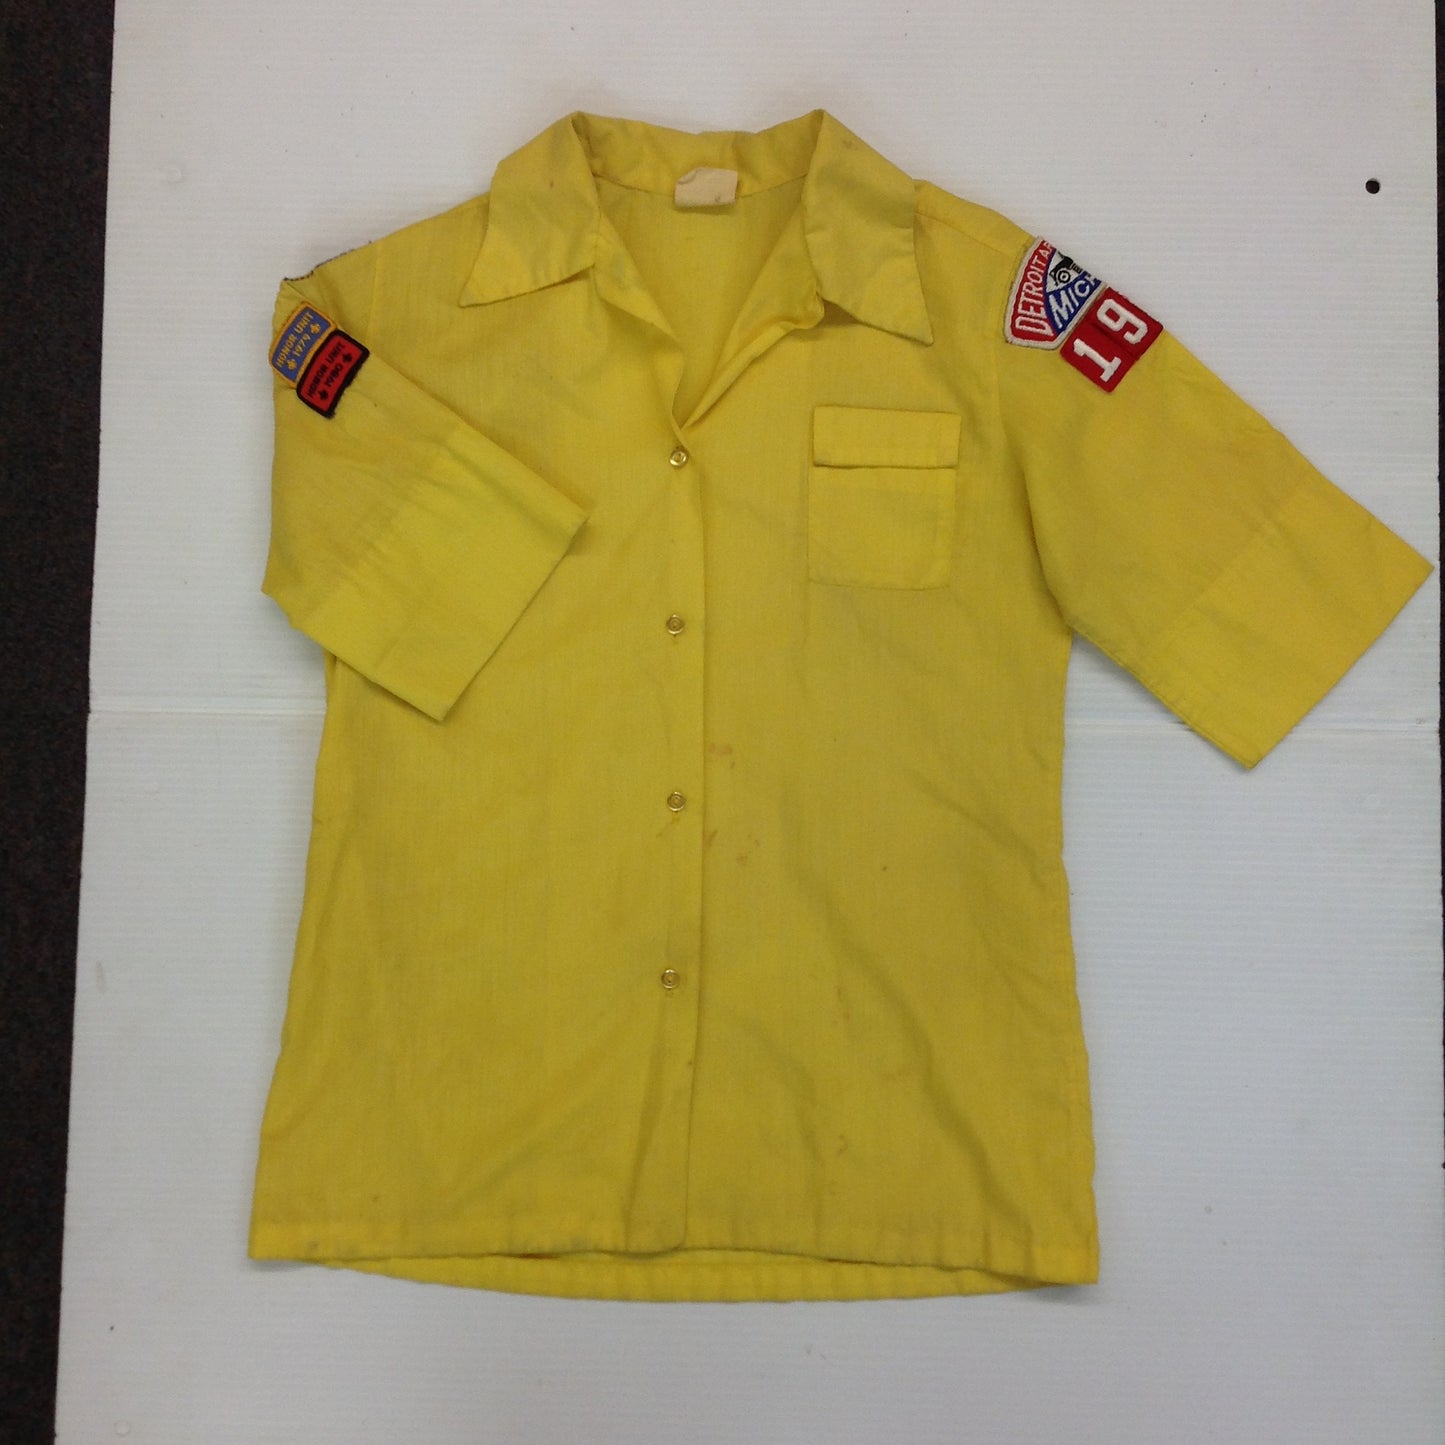 Vintage 1980 BSA Boy Scouts of America Yellow Uniform Shirt 34 Detroit Area Council Michigan 1909 Den 1 Honor Unit